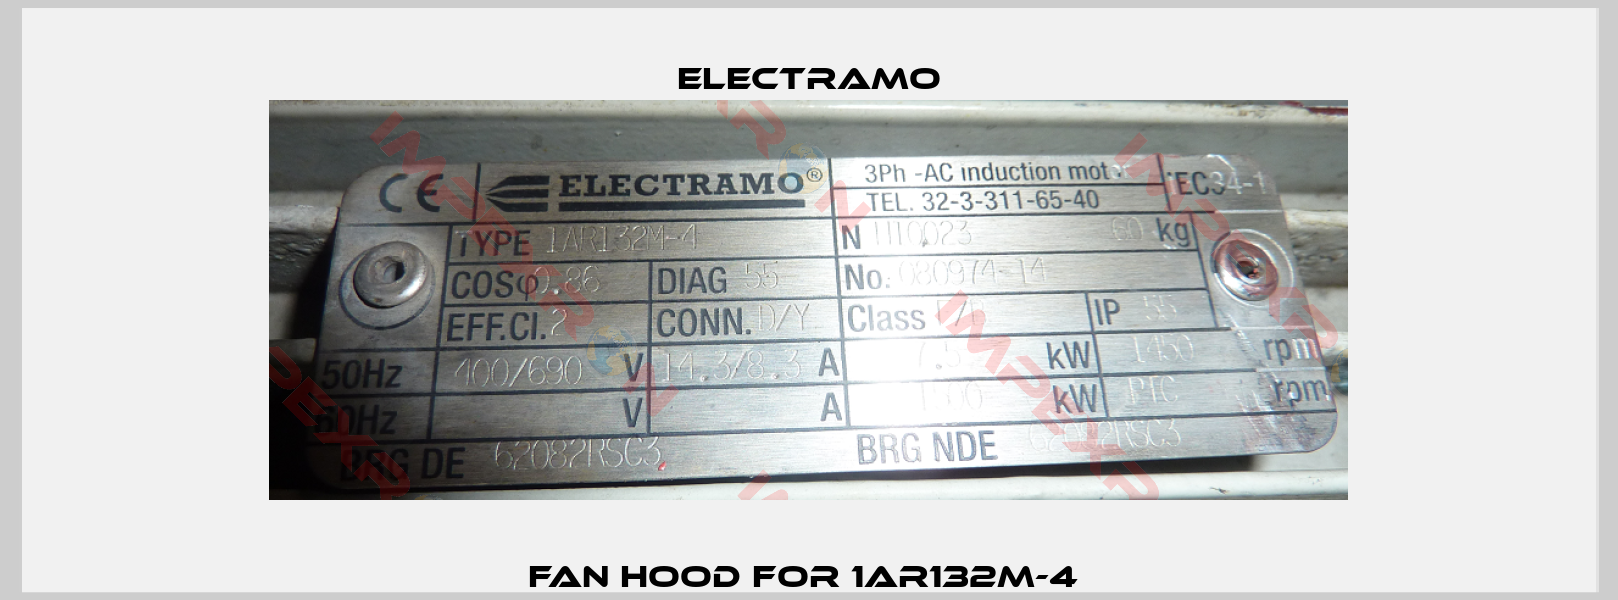 Fan hood for 1AR132M-4 -0